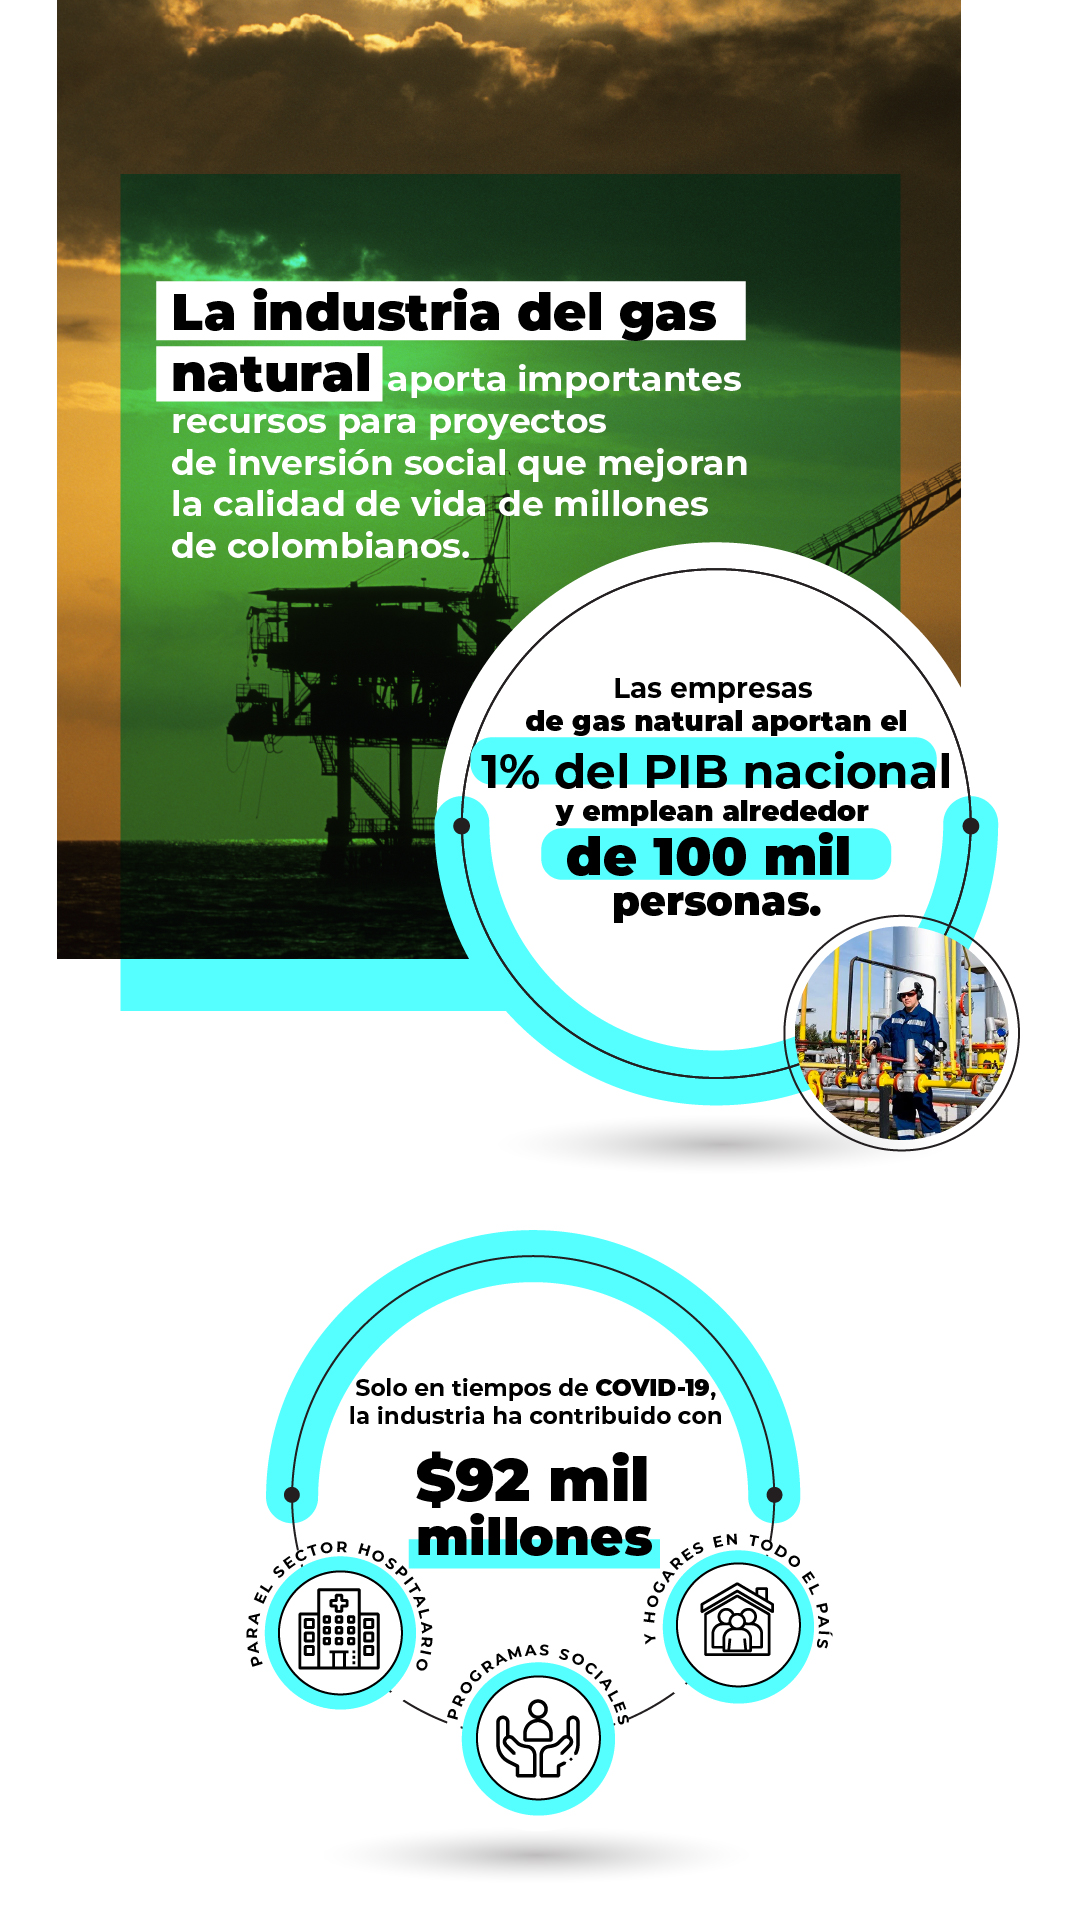 La industria del gas natural aporta importantes recursos para proyectos de inversión